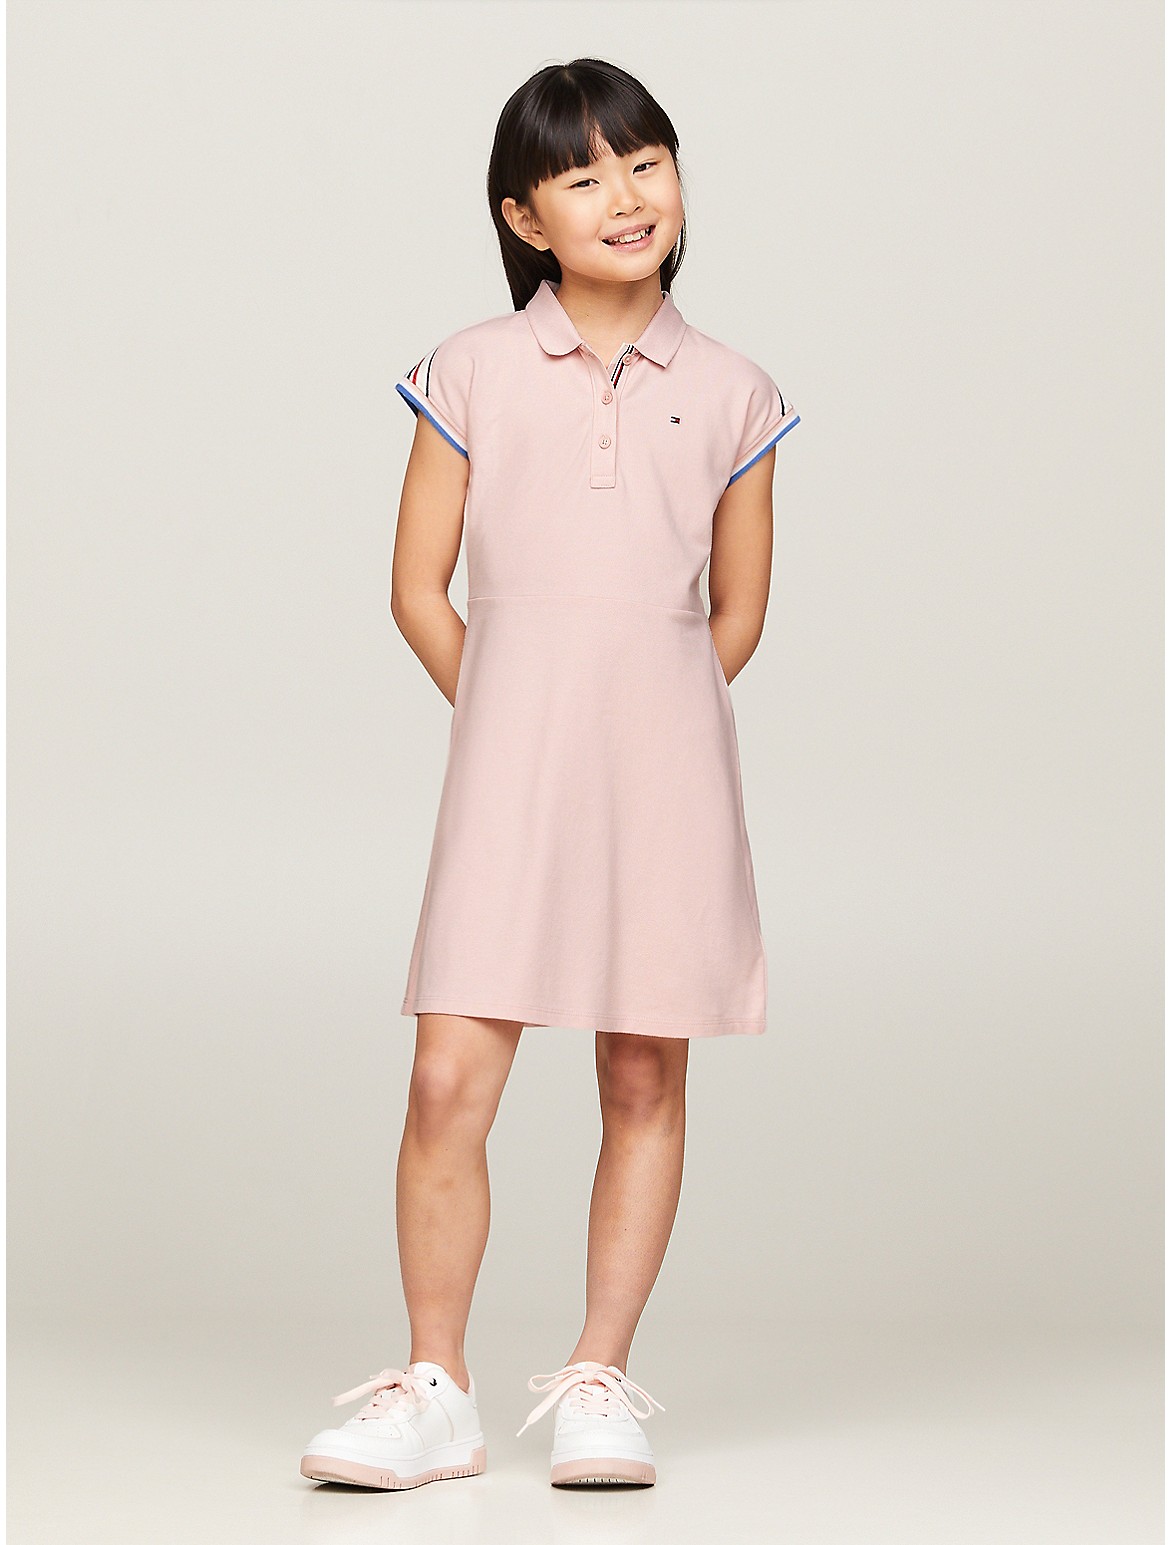 Tommy Hilfiger Girls' Kids' Shoulder-Stripe Polo Dress